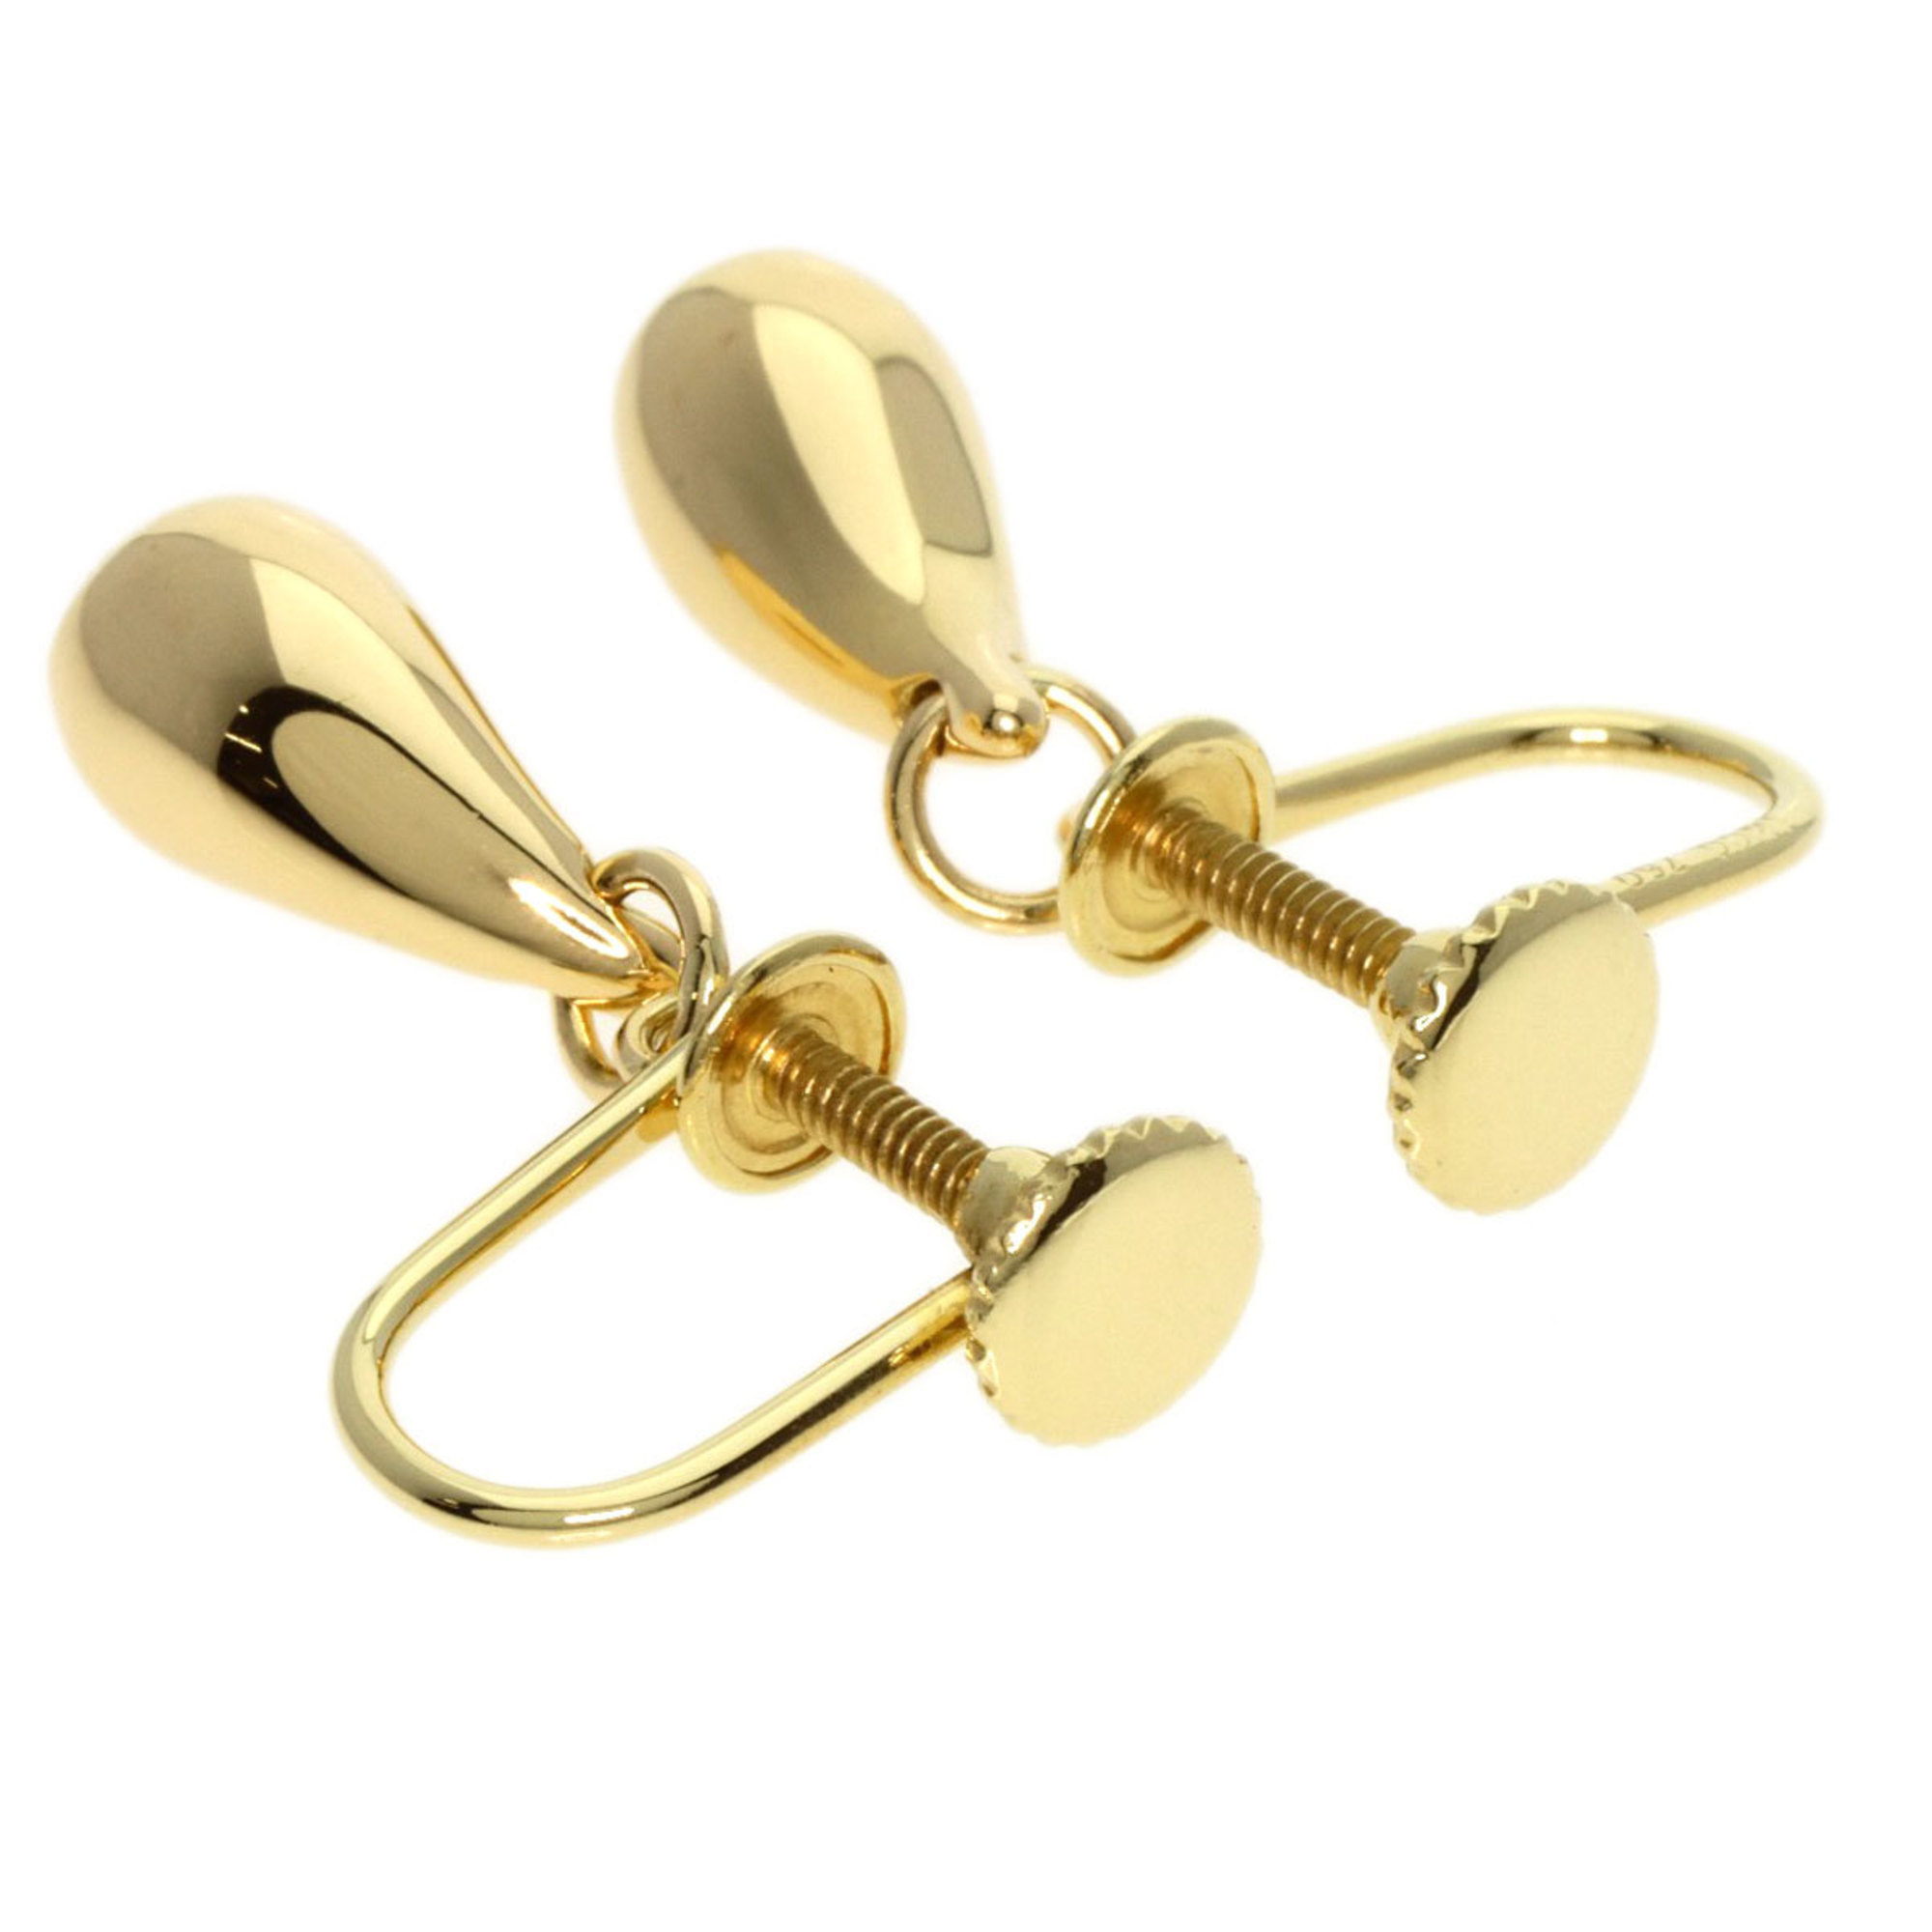 Tiffany & Co. Teardrop Earrings, 18k Yellow Gold, Women's, TIFFANY